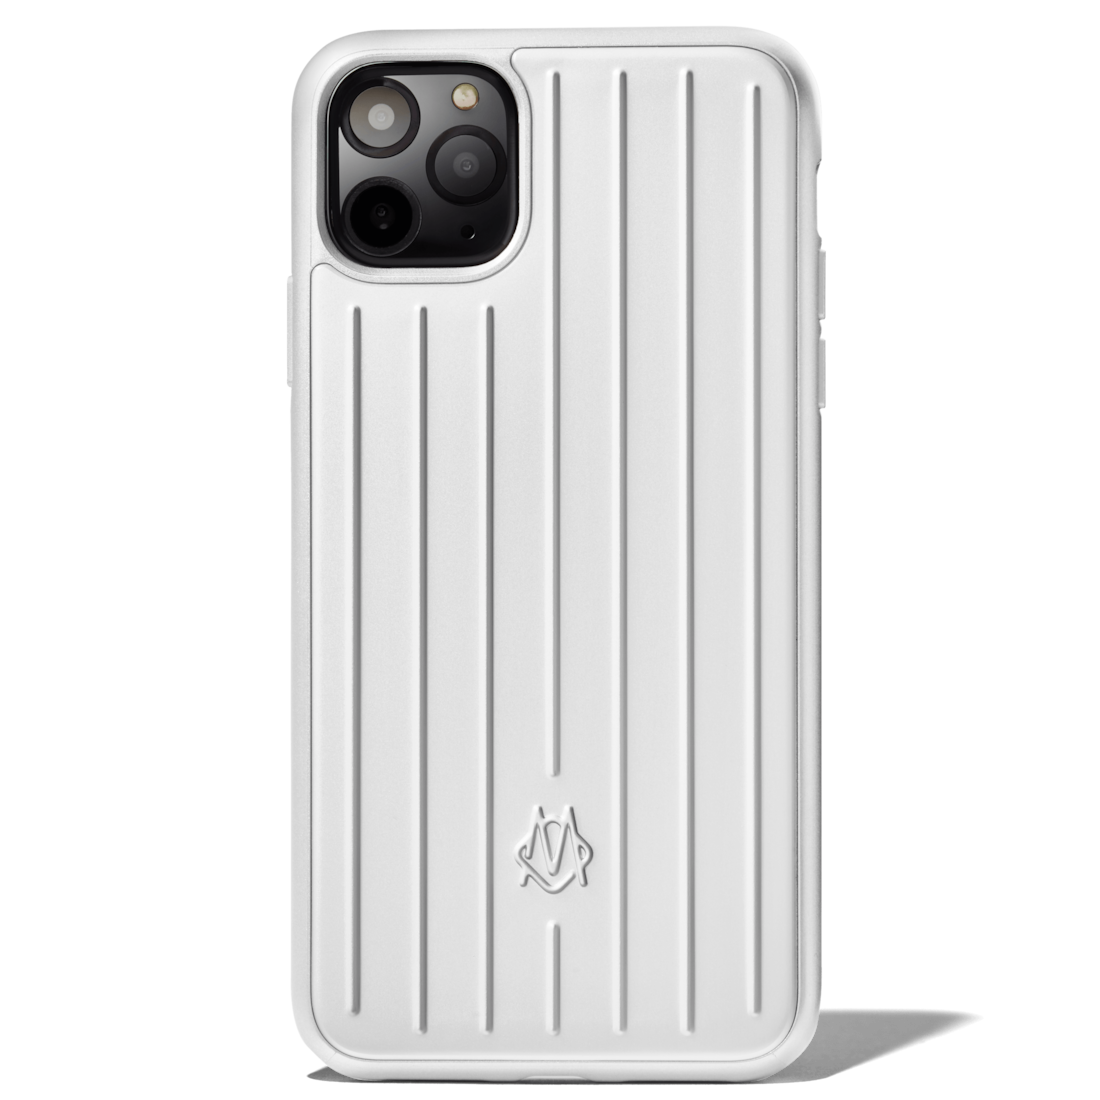 Aluminum iPhone 11 Pro Max Case 